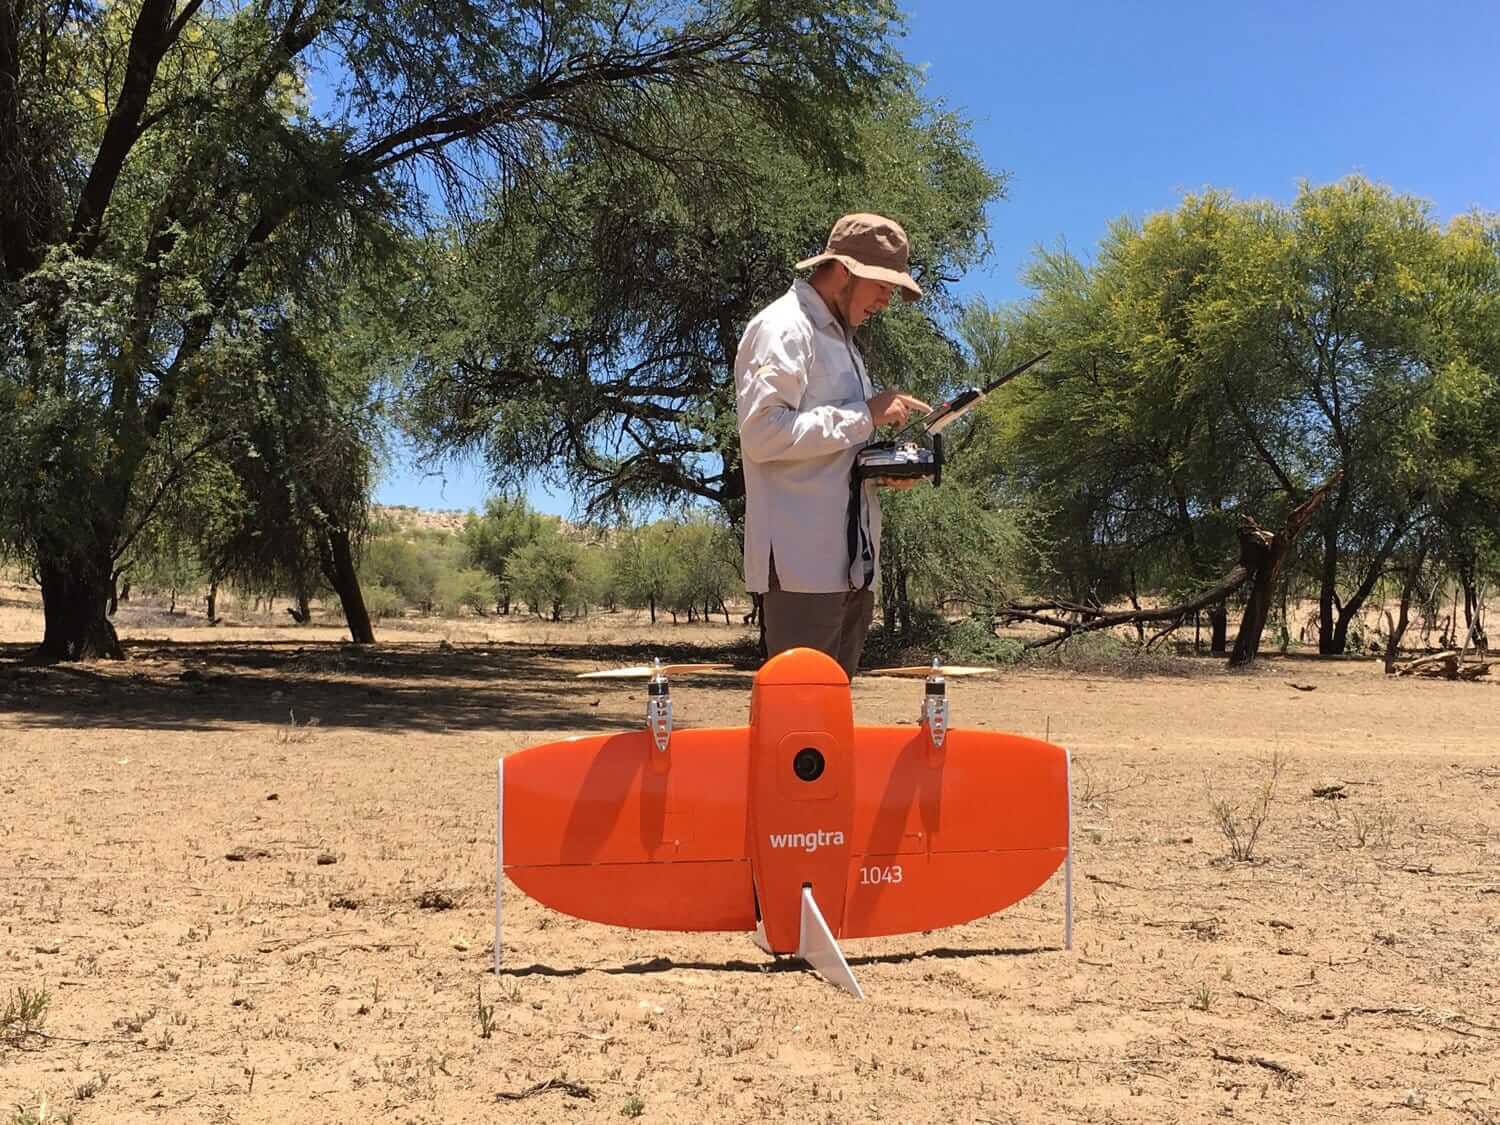 VTOL uav drone in the desert